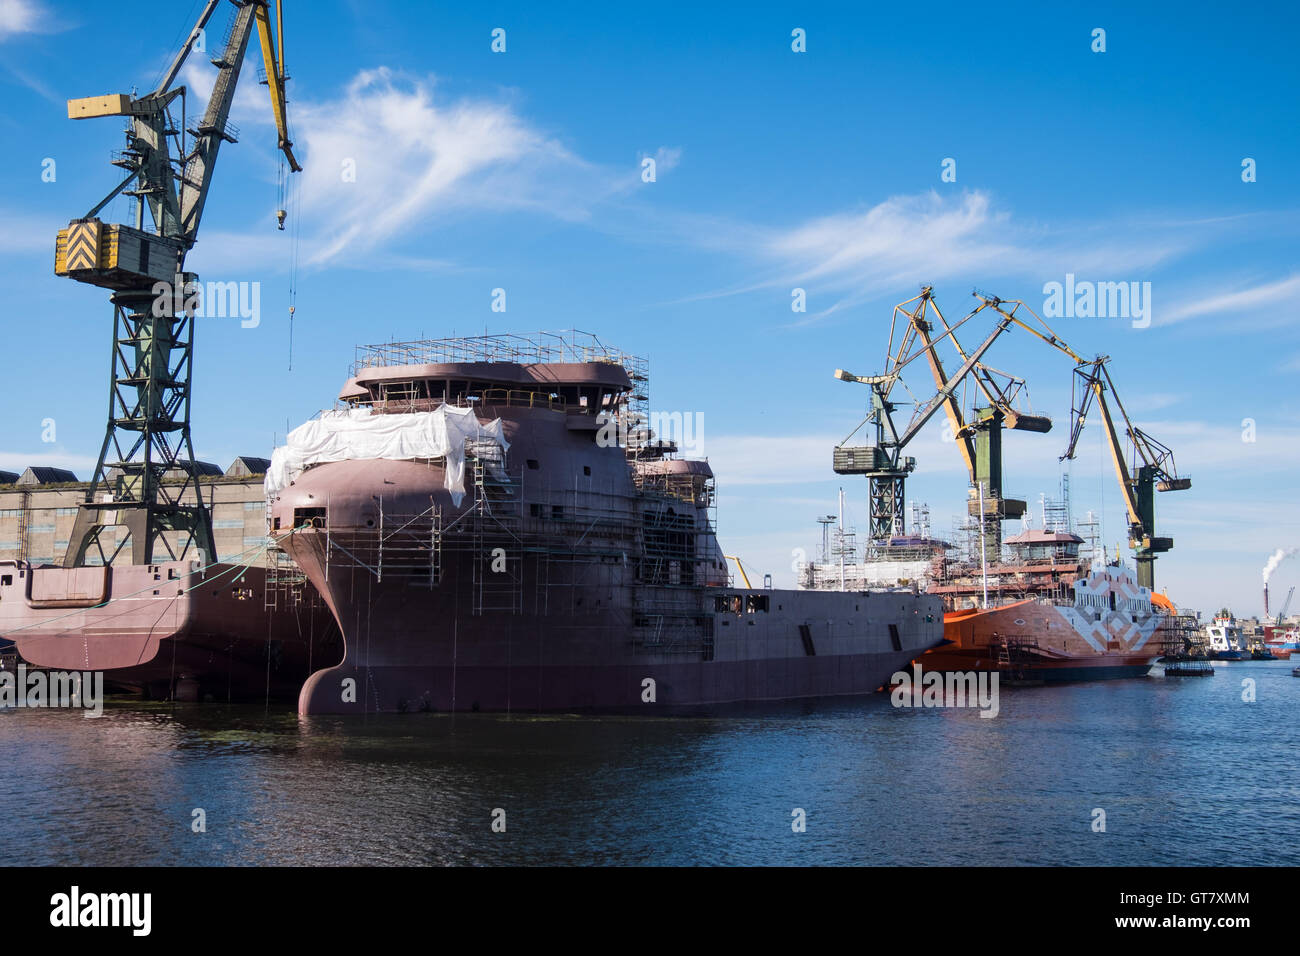 Le tout nouveau navire d'approvisionnement en mer, Siem Rhapsody et Siem Melody (gauche) à Gdansk, Pologne Banque D'Images